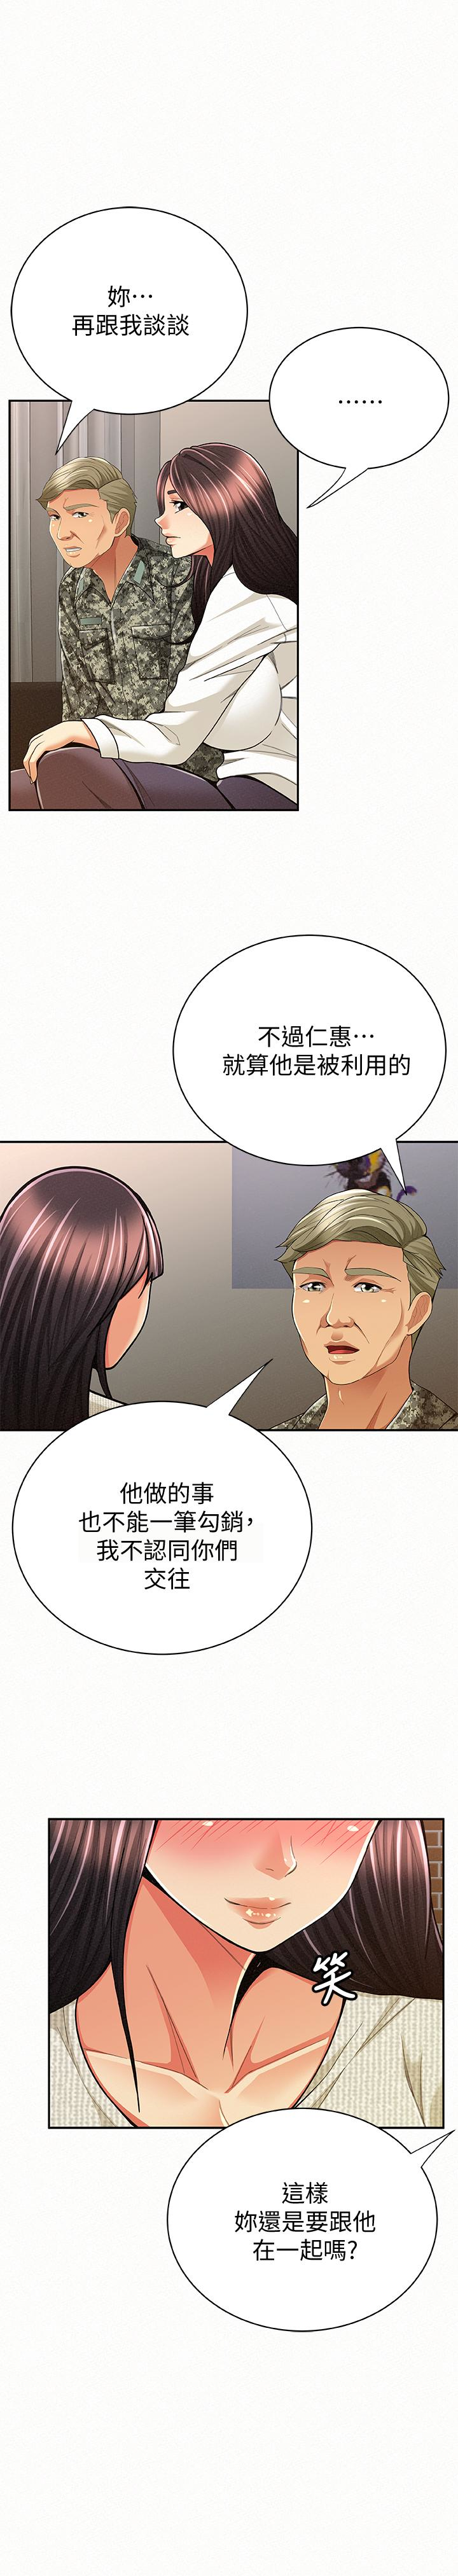 韩国污漫画 報告夫人 最终话-漫长军人生活的尽头 26